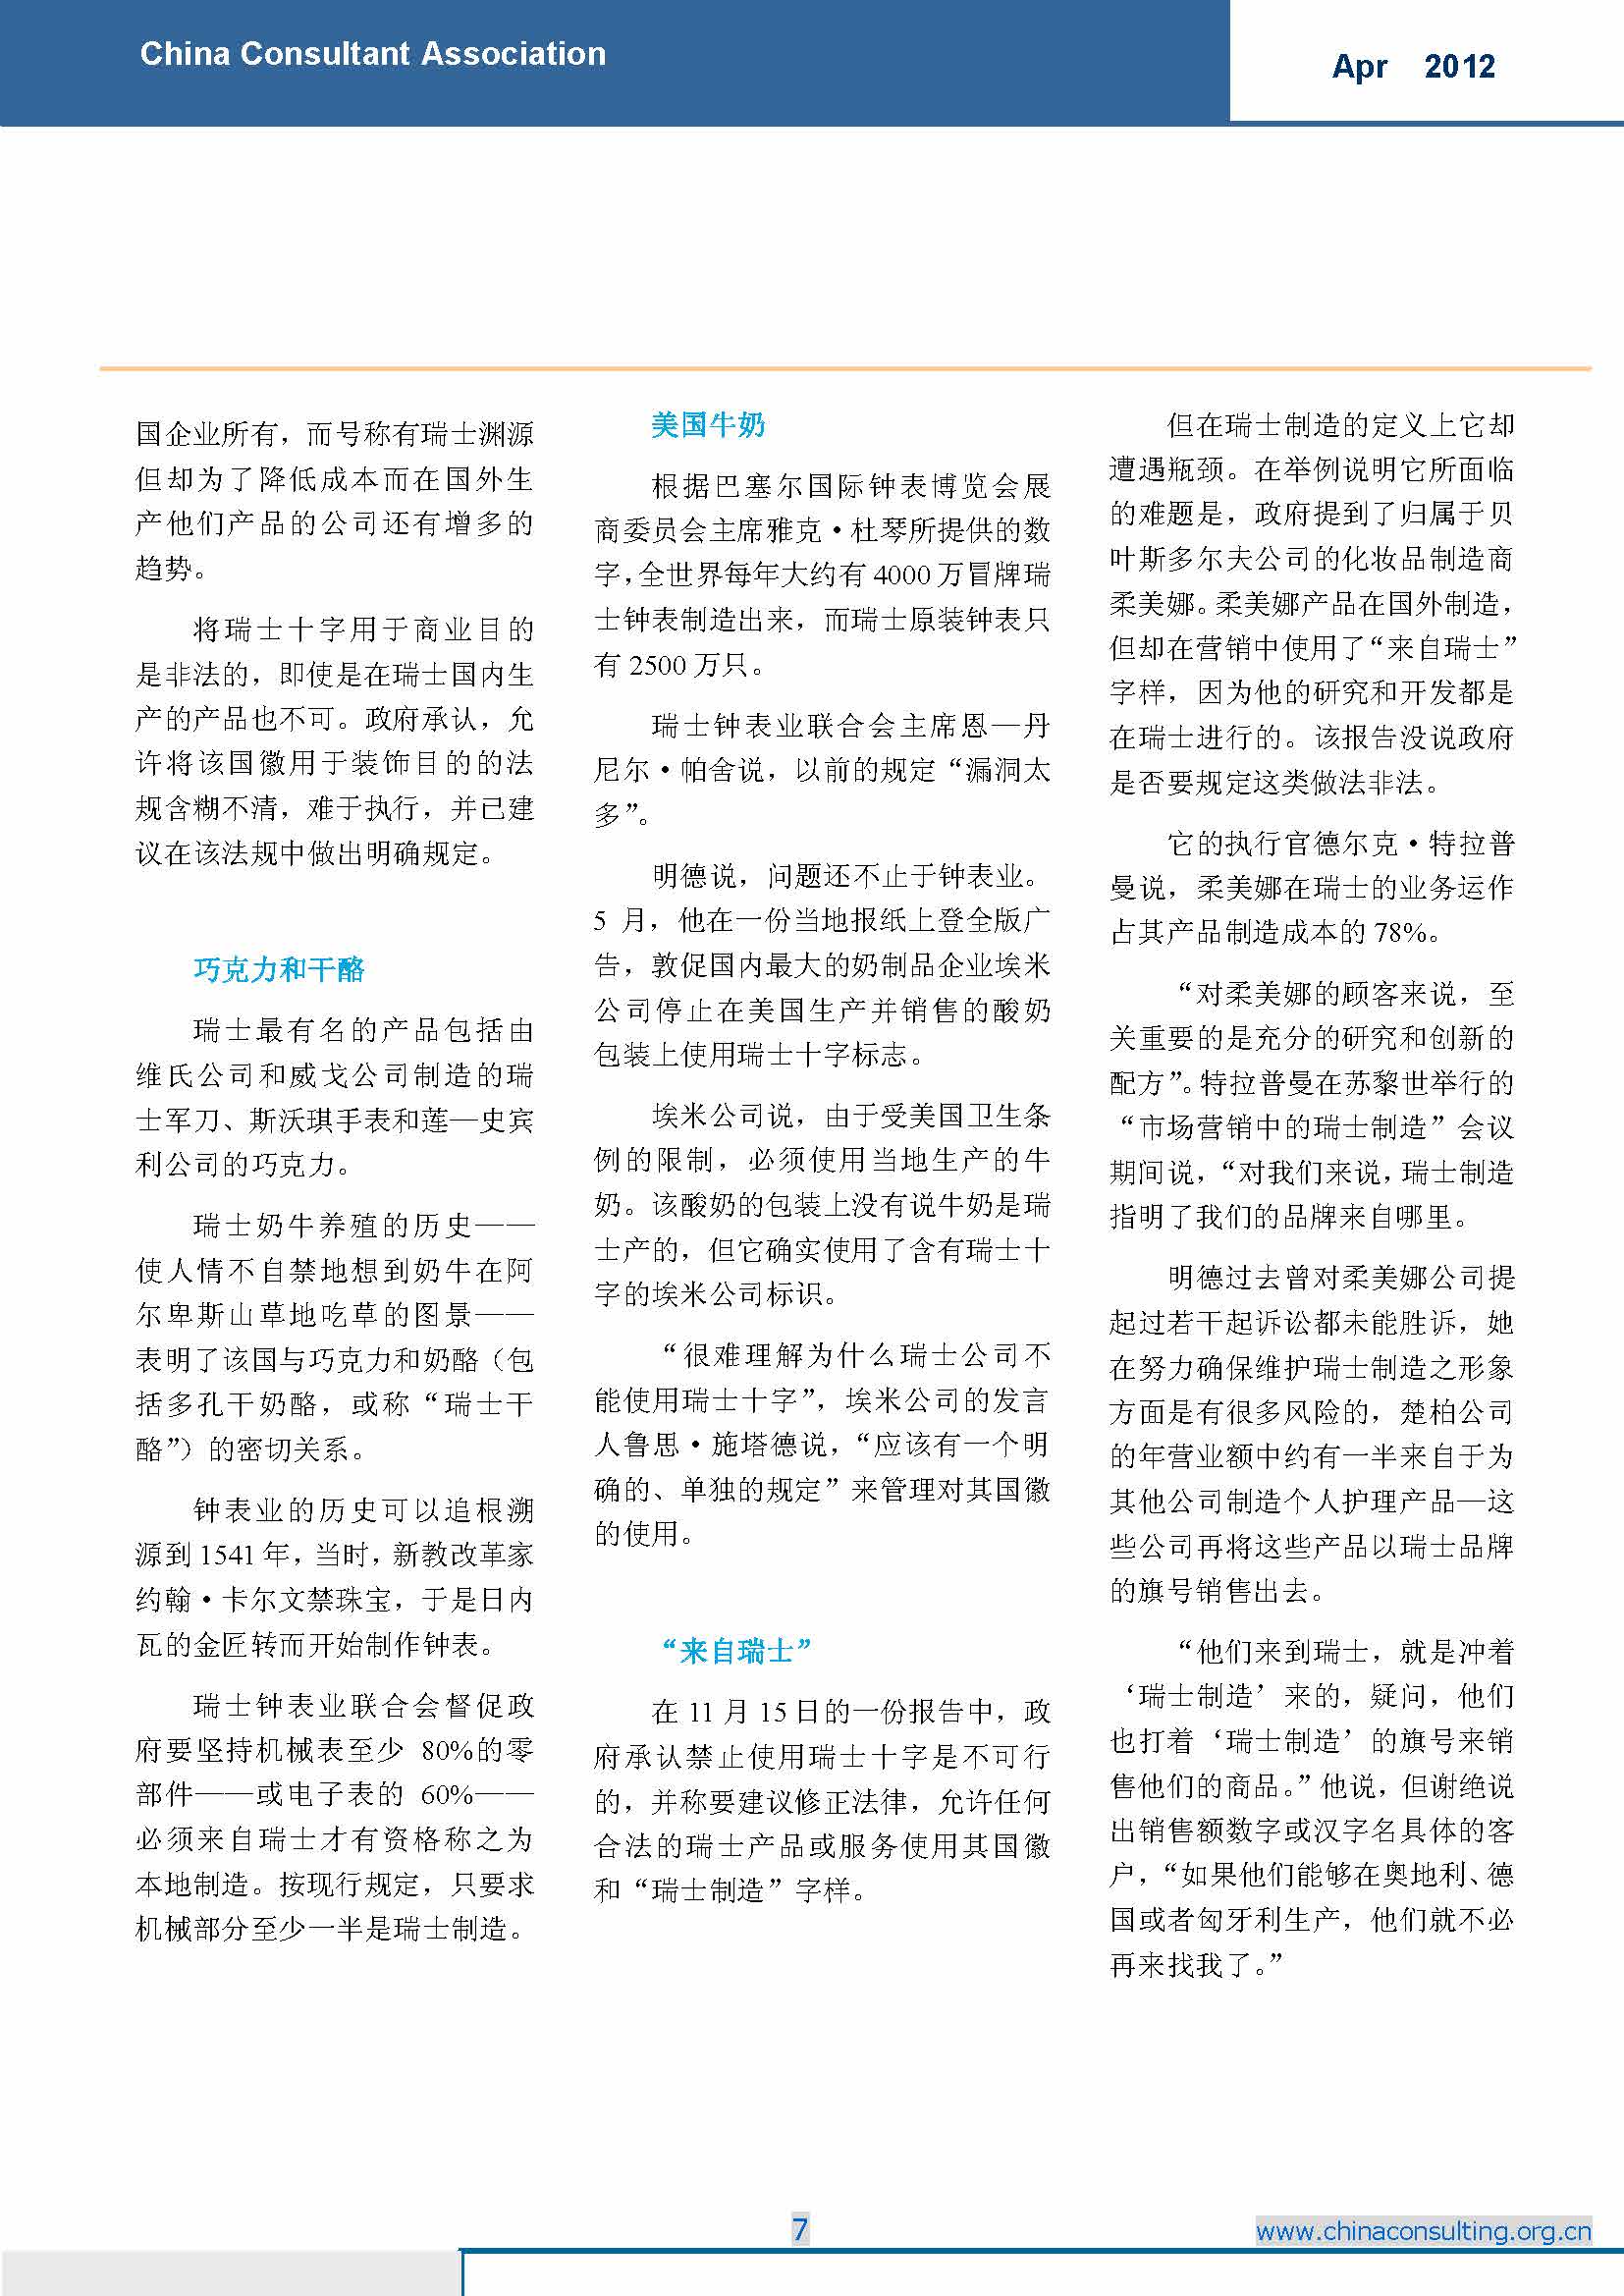 6中国科技咨询协会国际快讯（第六期）_页面_09.jpg